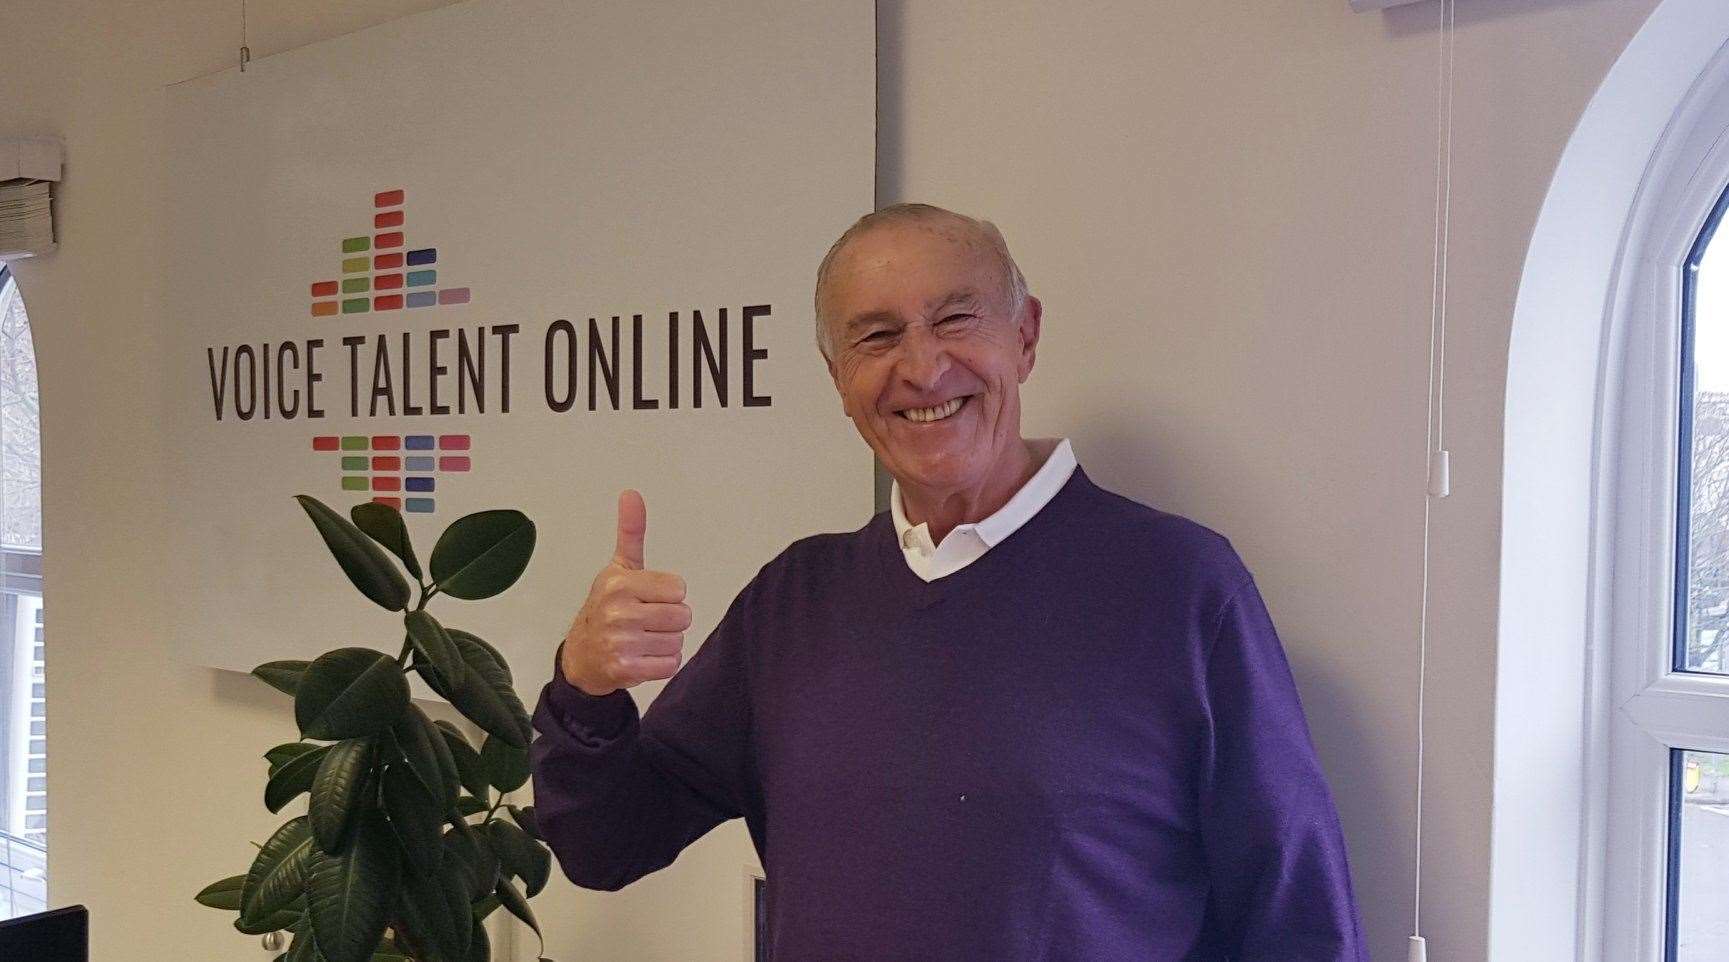 Len Goodman at Voice Talent Online in Gravesend